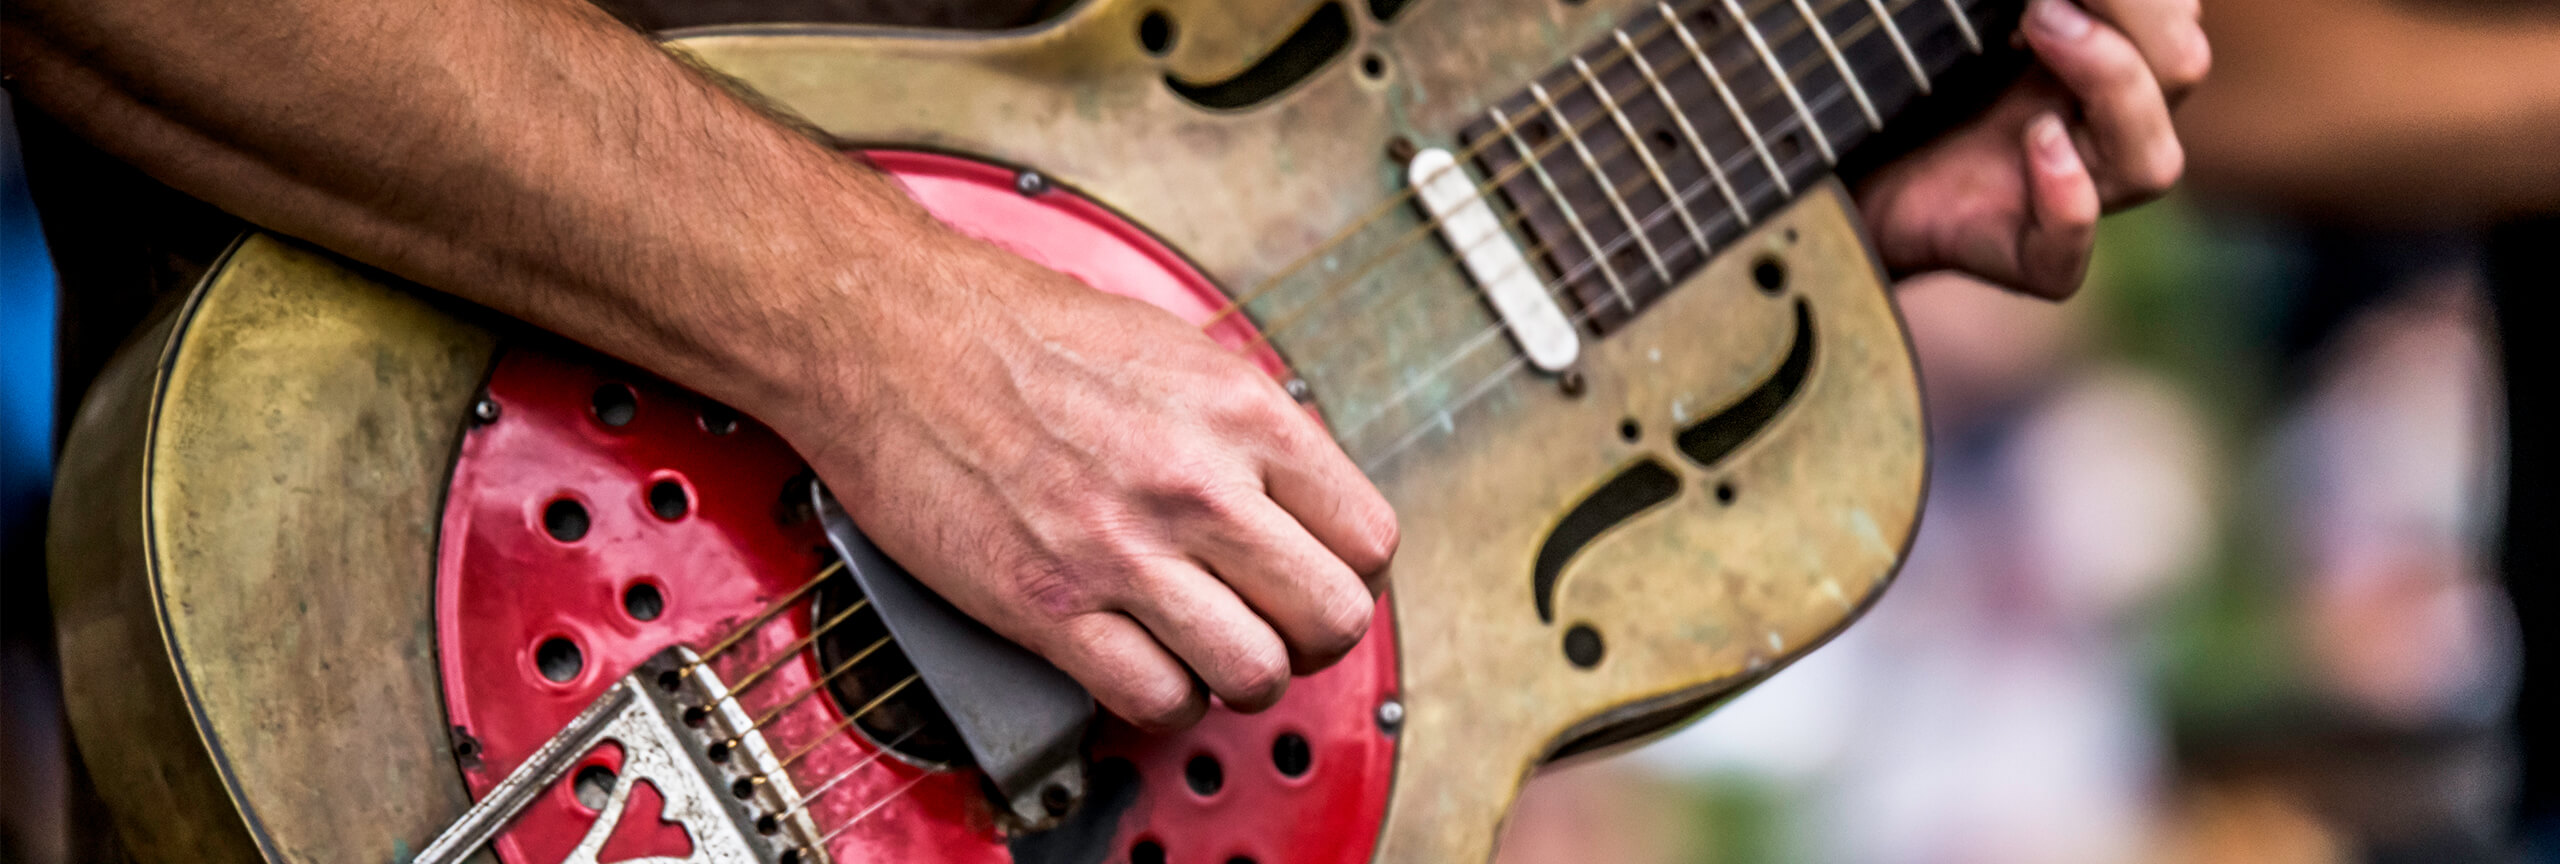 Close up of man playing guitar